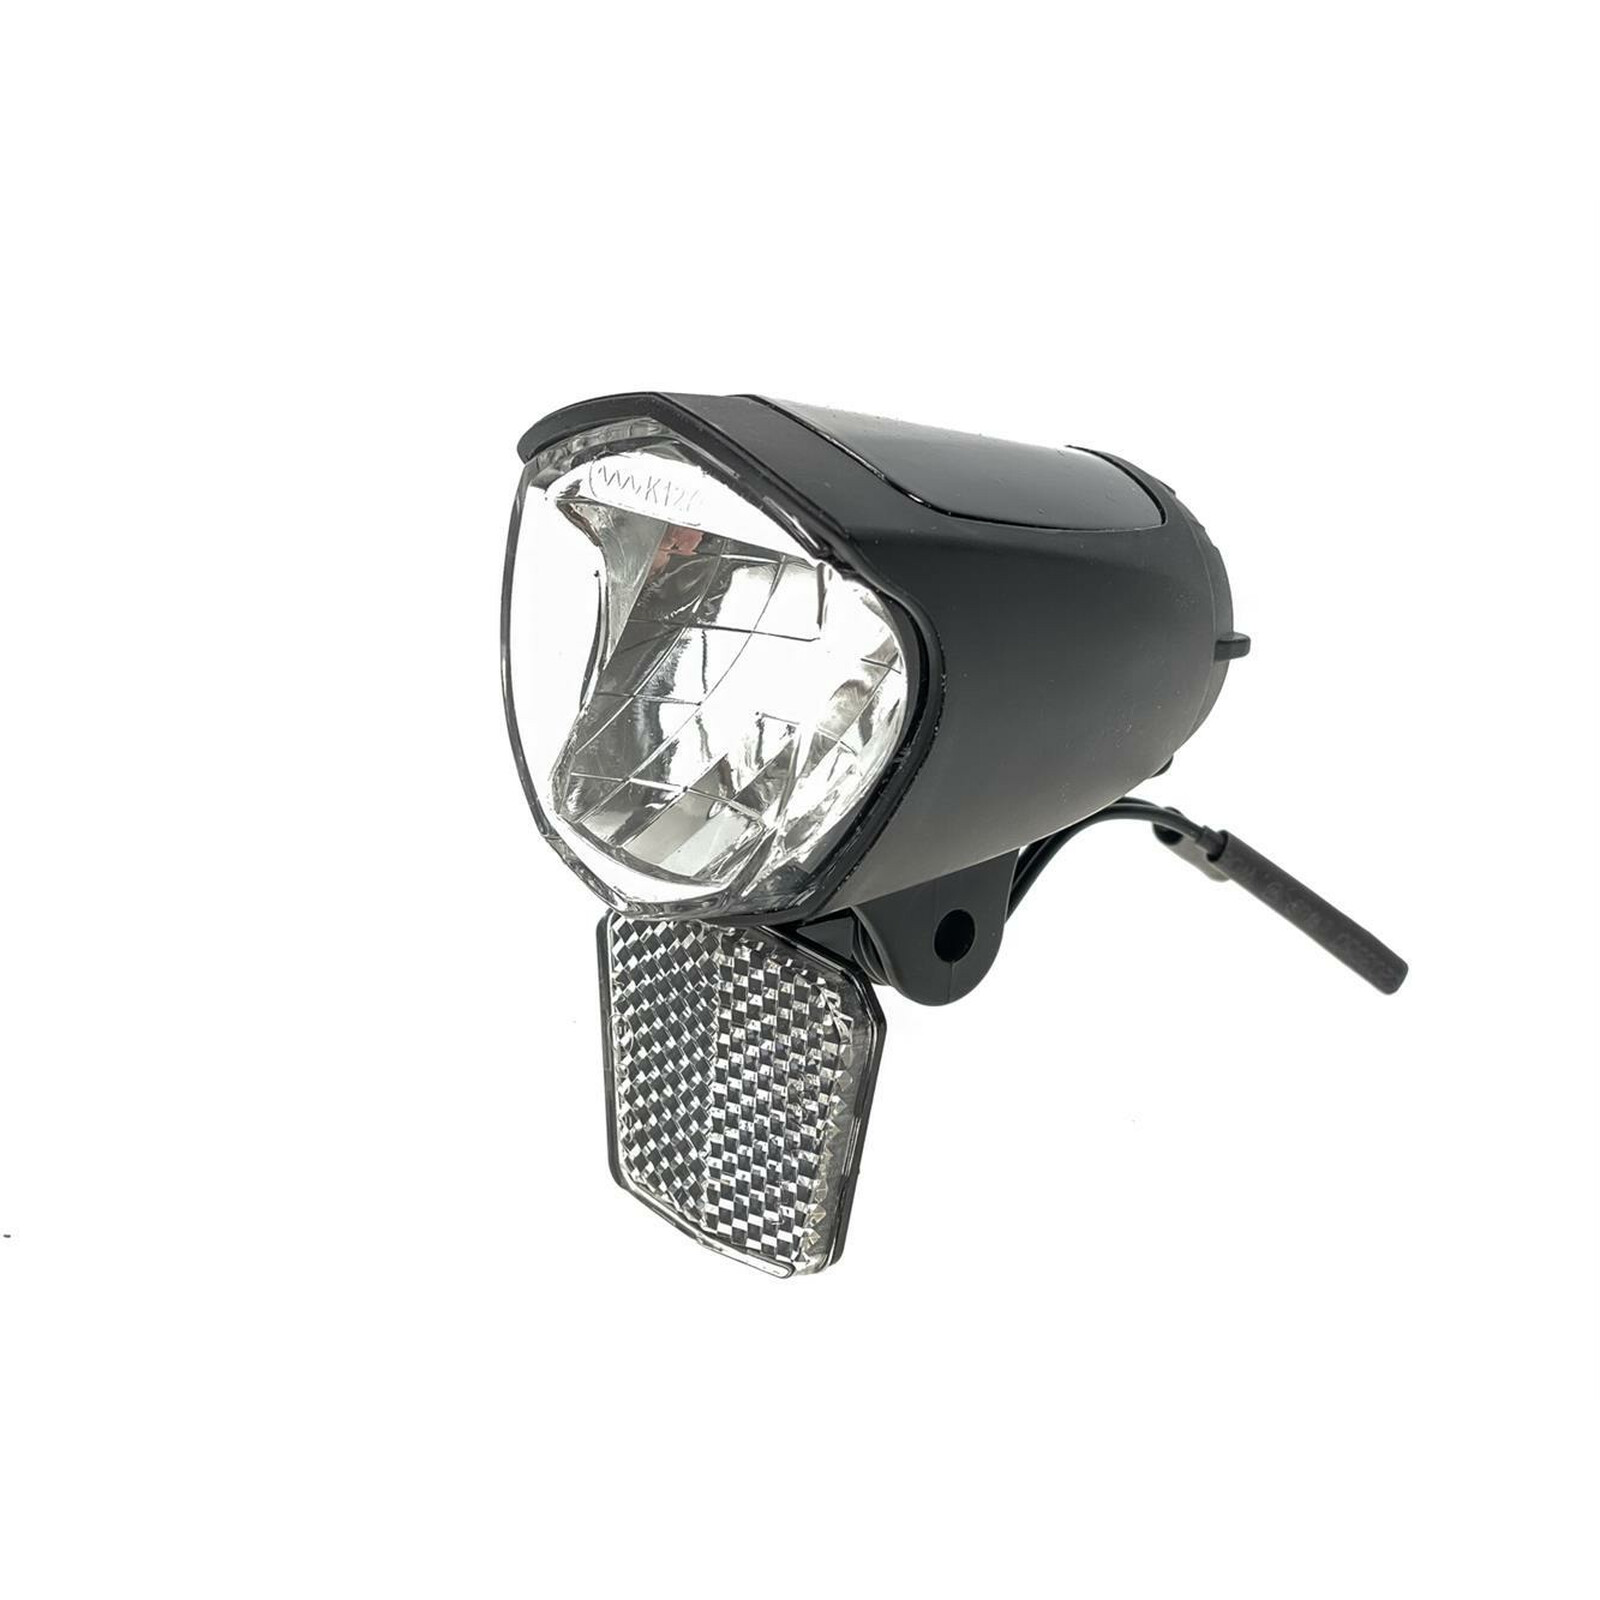 Fahrrad Front Scheinwerfer 70 Lux LED Vorder Licht 6V12V